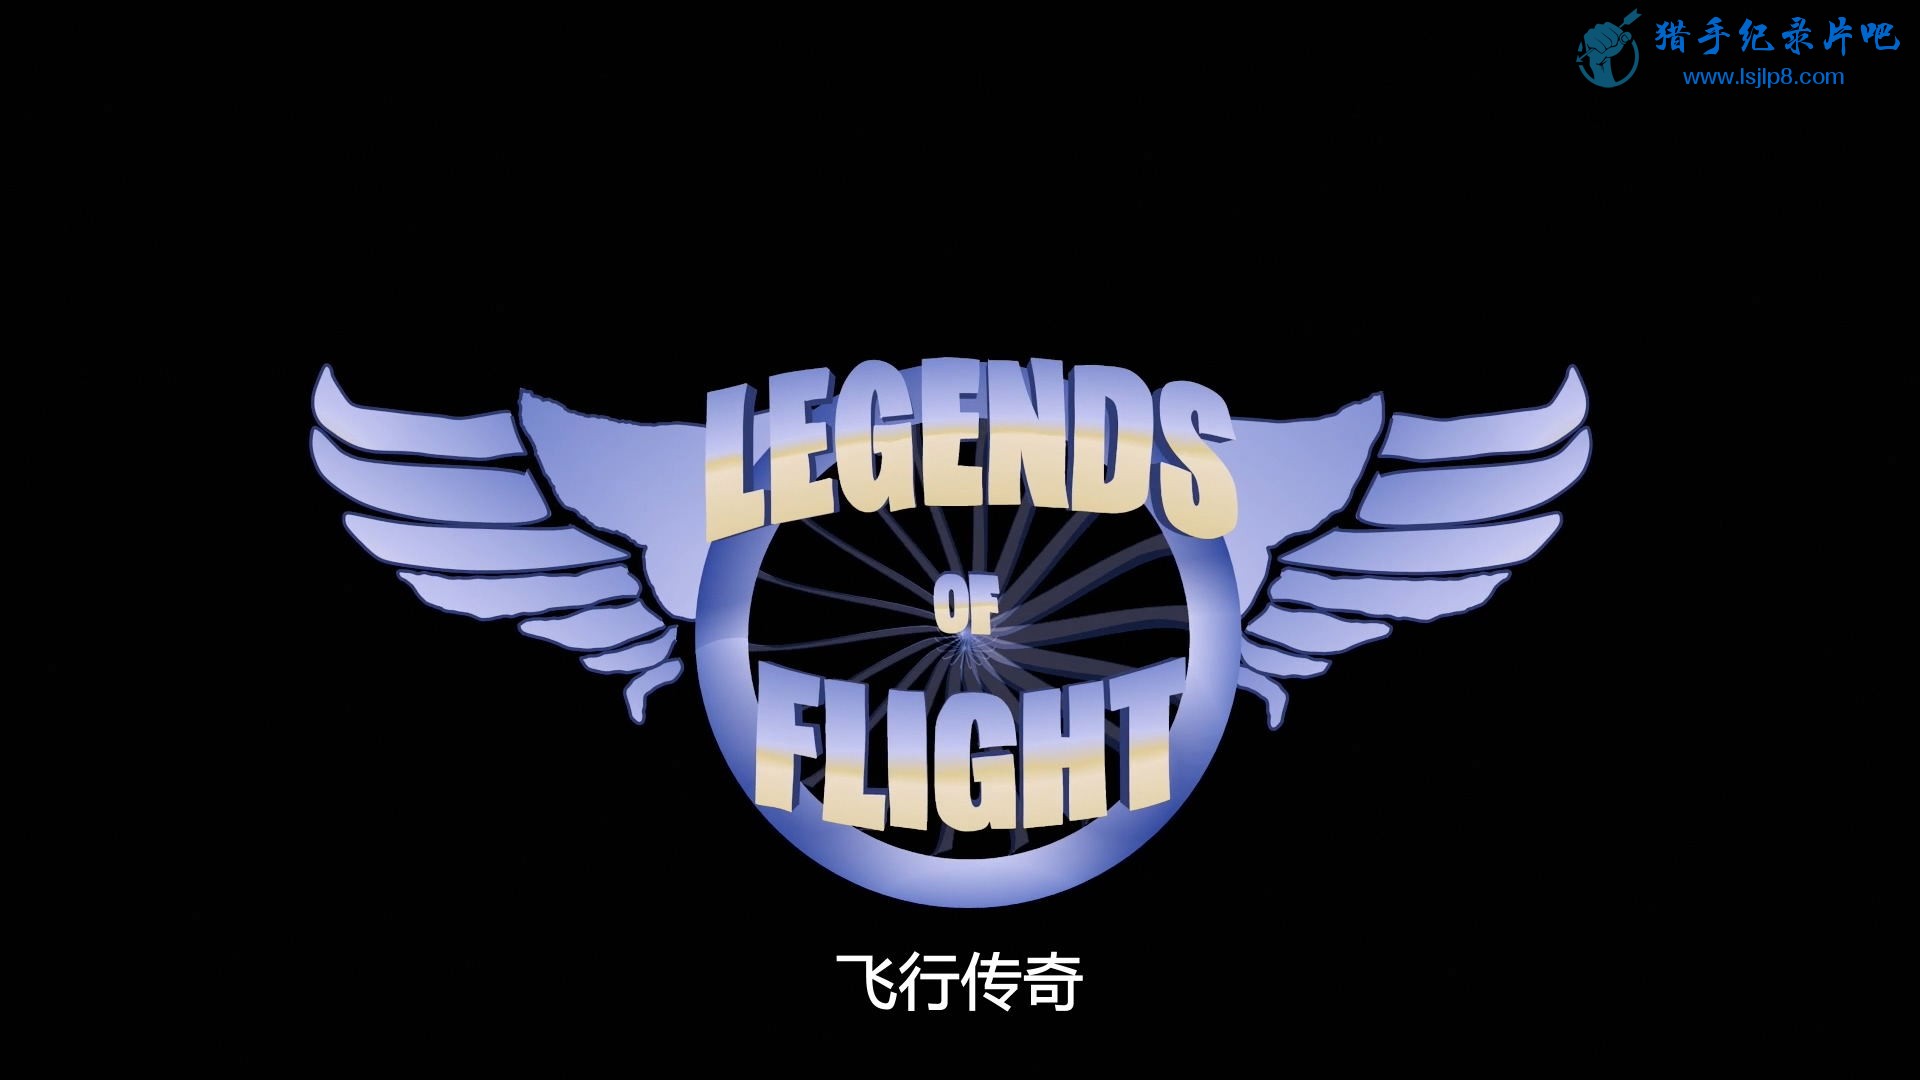 legends.of.flight.2010.1080p.bluray.x264-fasthd.mkv_20200601_090059.484_ͼ.jpg